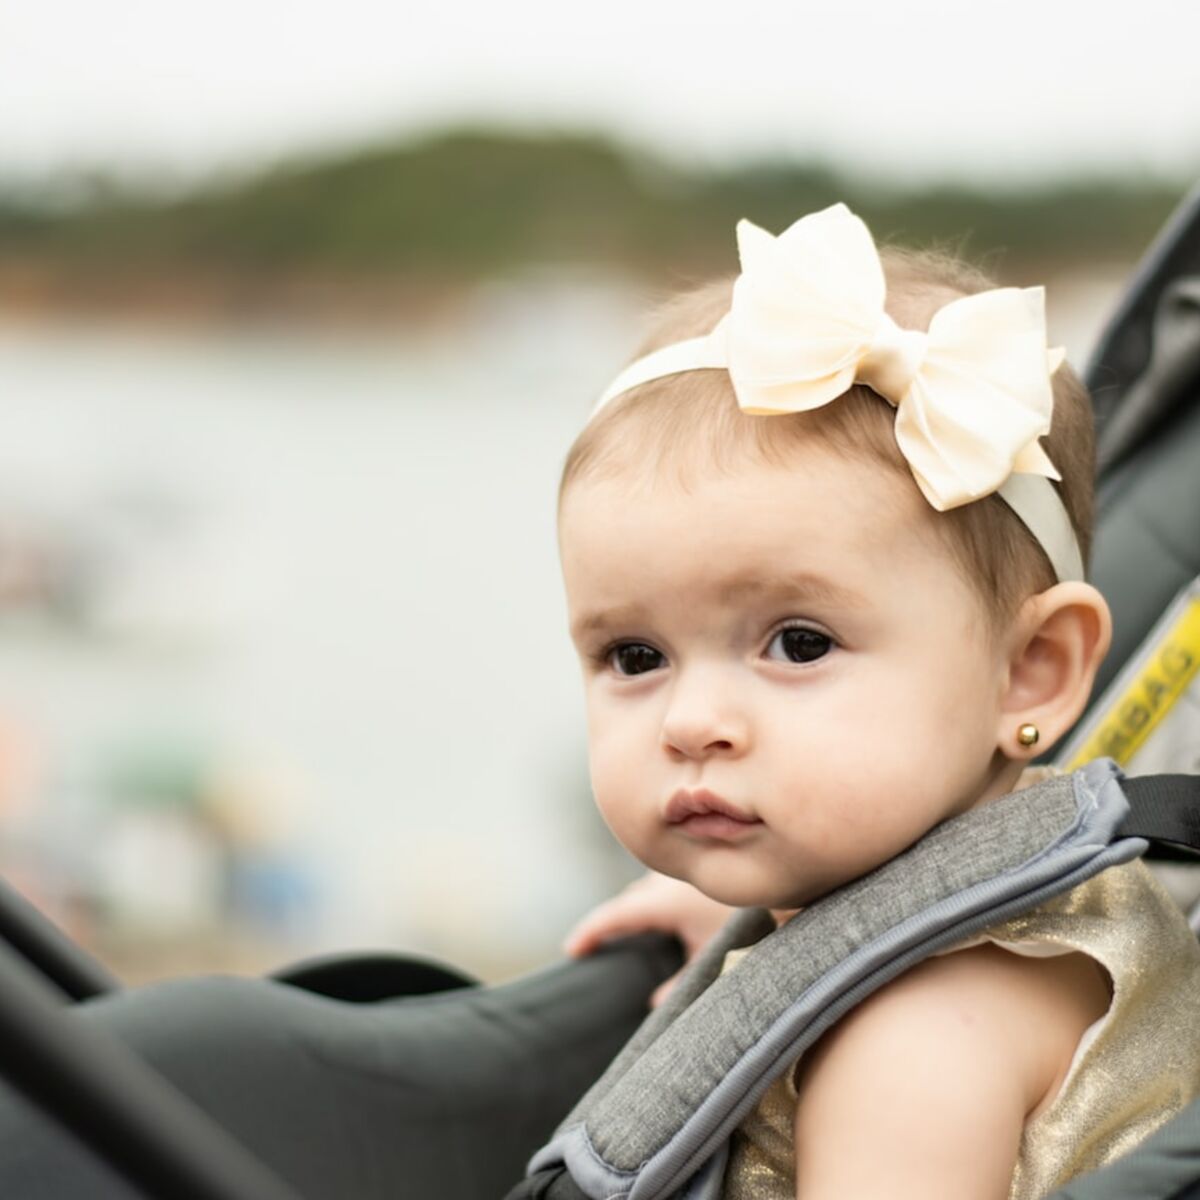 Siège auto pour bébé, rehausseur enfant : jusqu'à quel âge est-ce  obligatoire ? : Femme Actuelle Le MAG